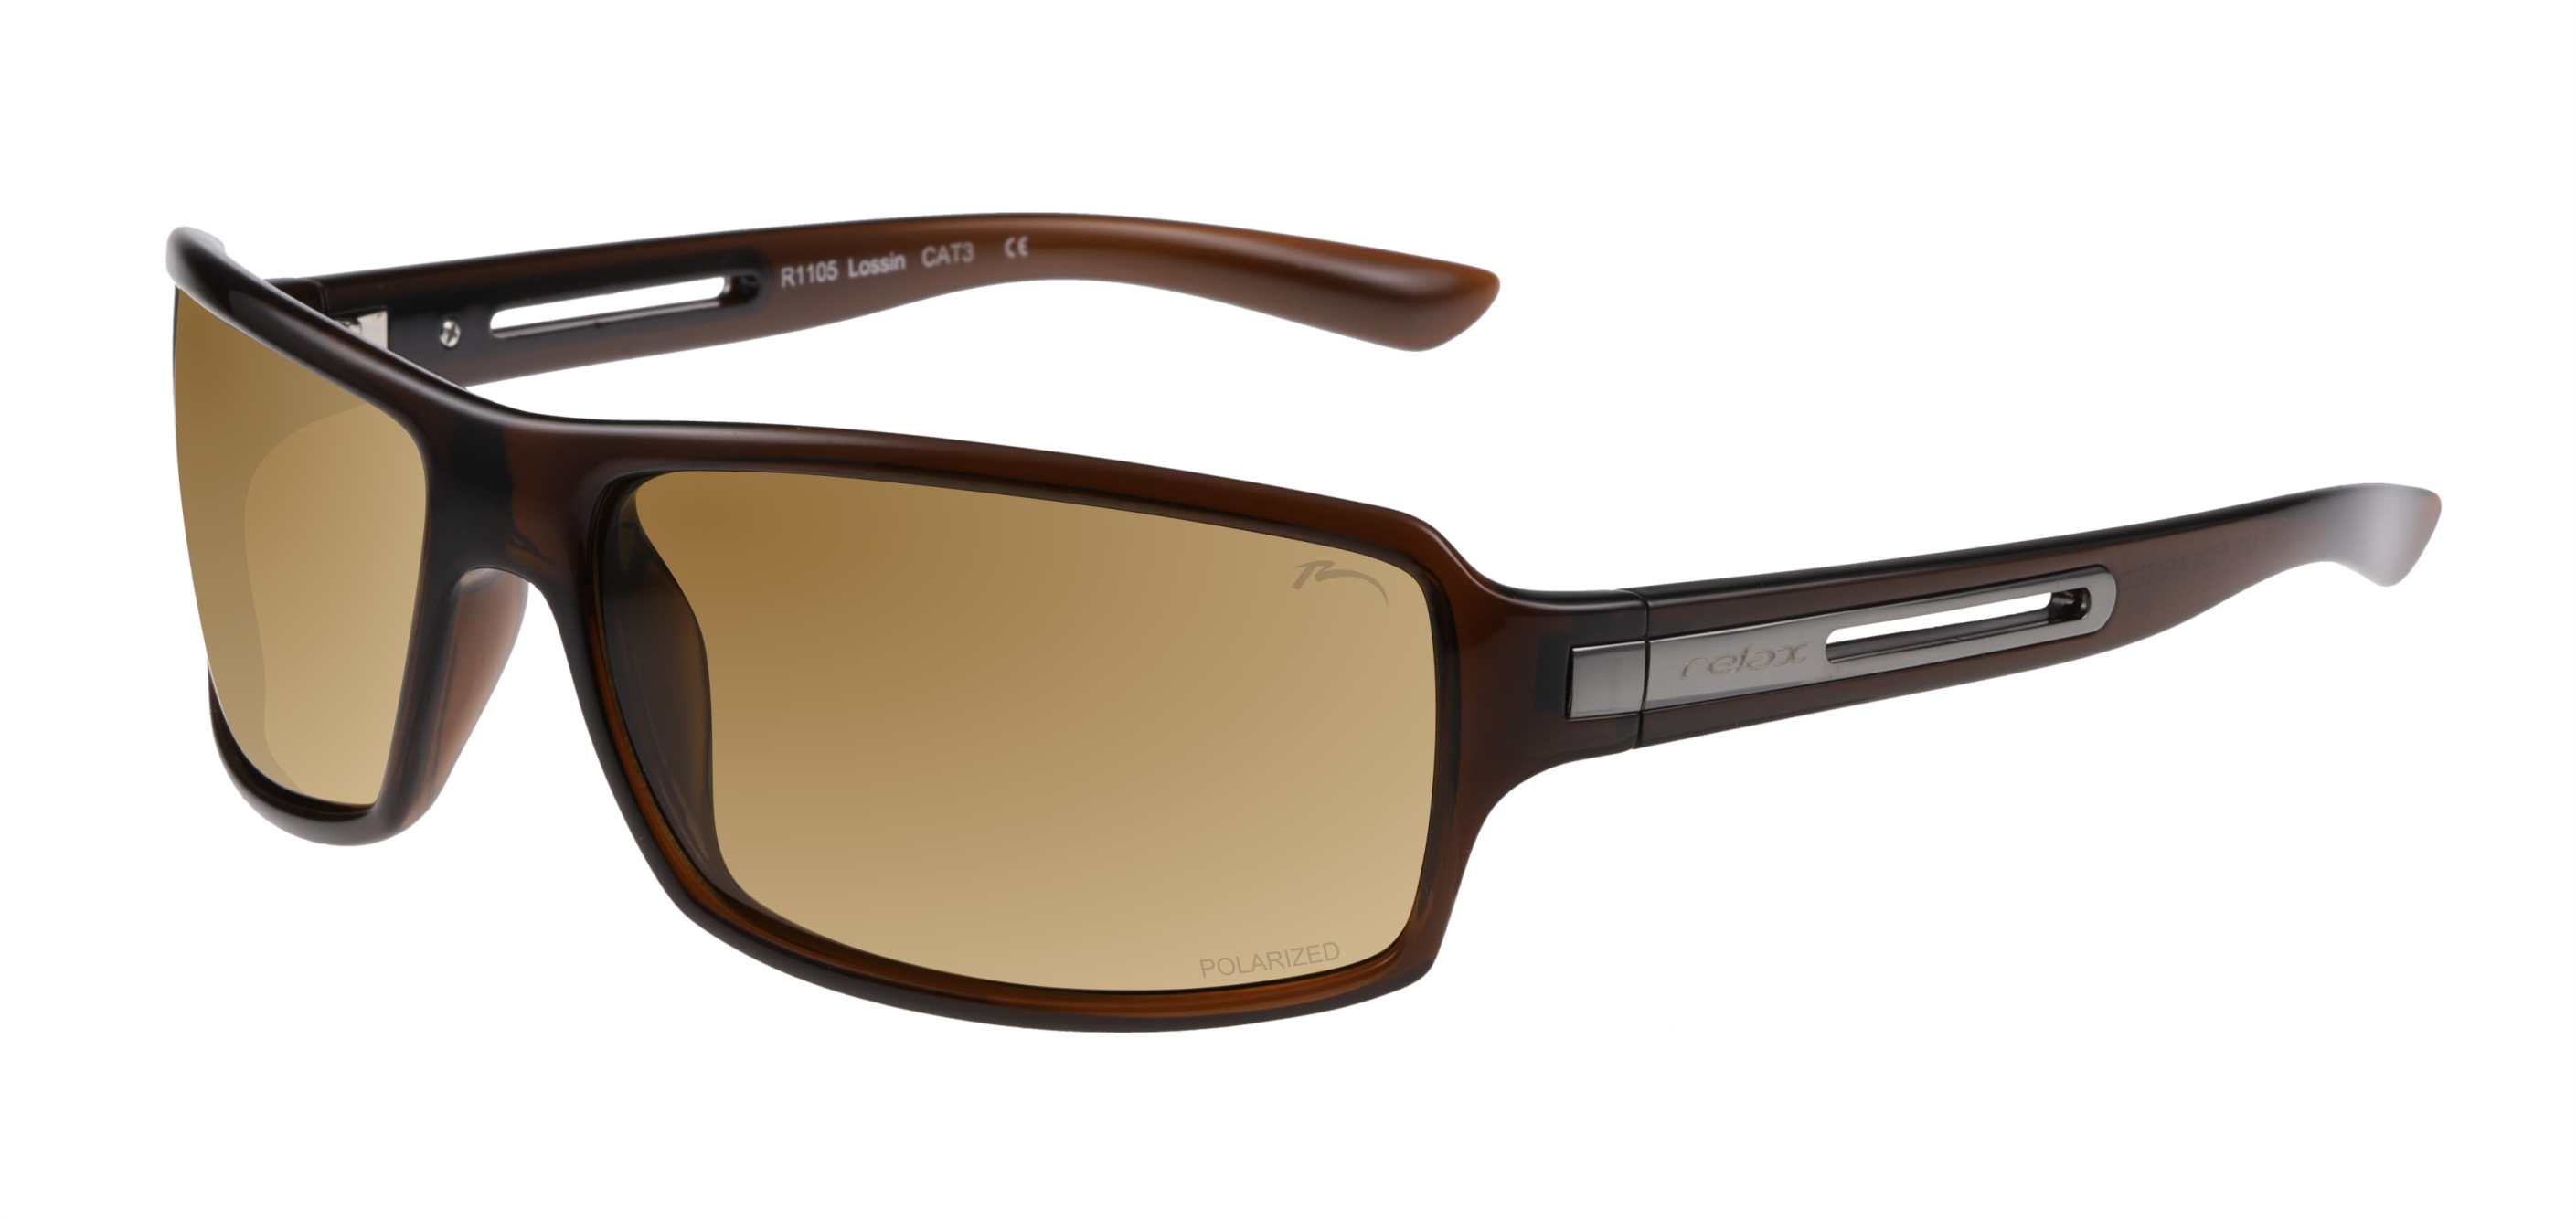 Polarized sunglasses  Relax Lossin R1105 Standard